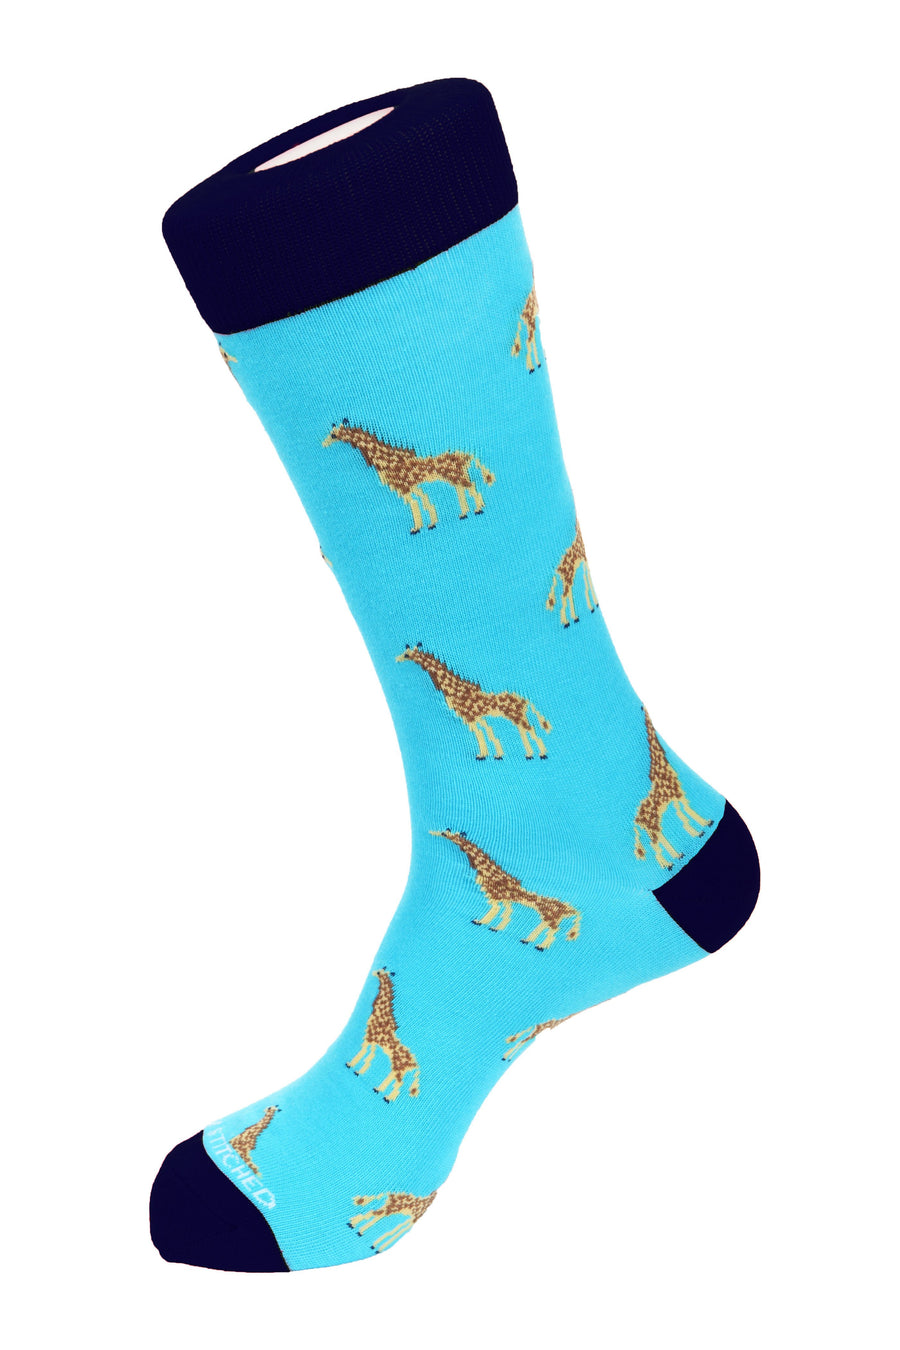 Giraffes Socks